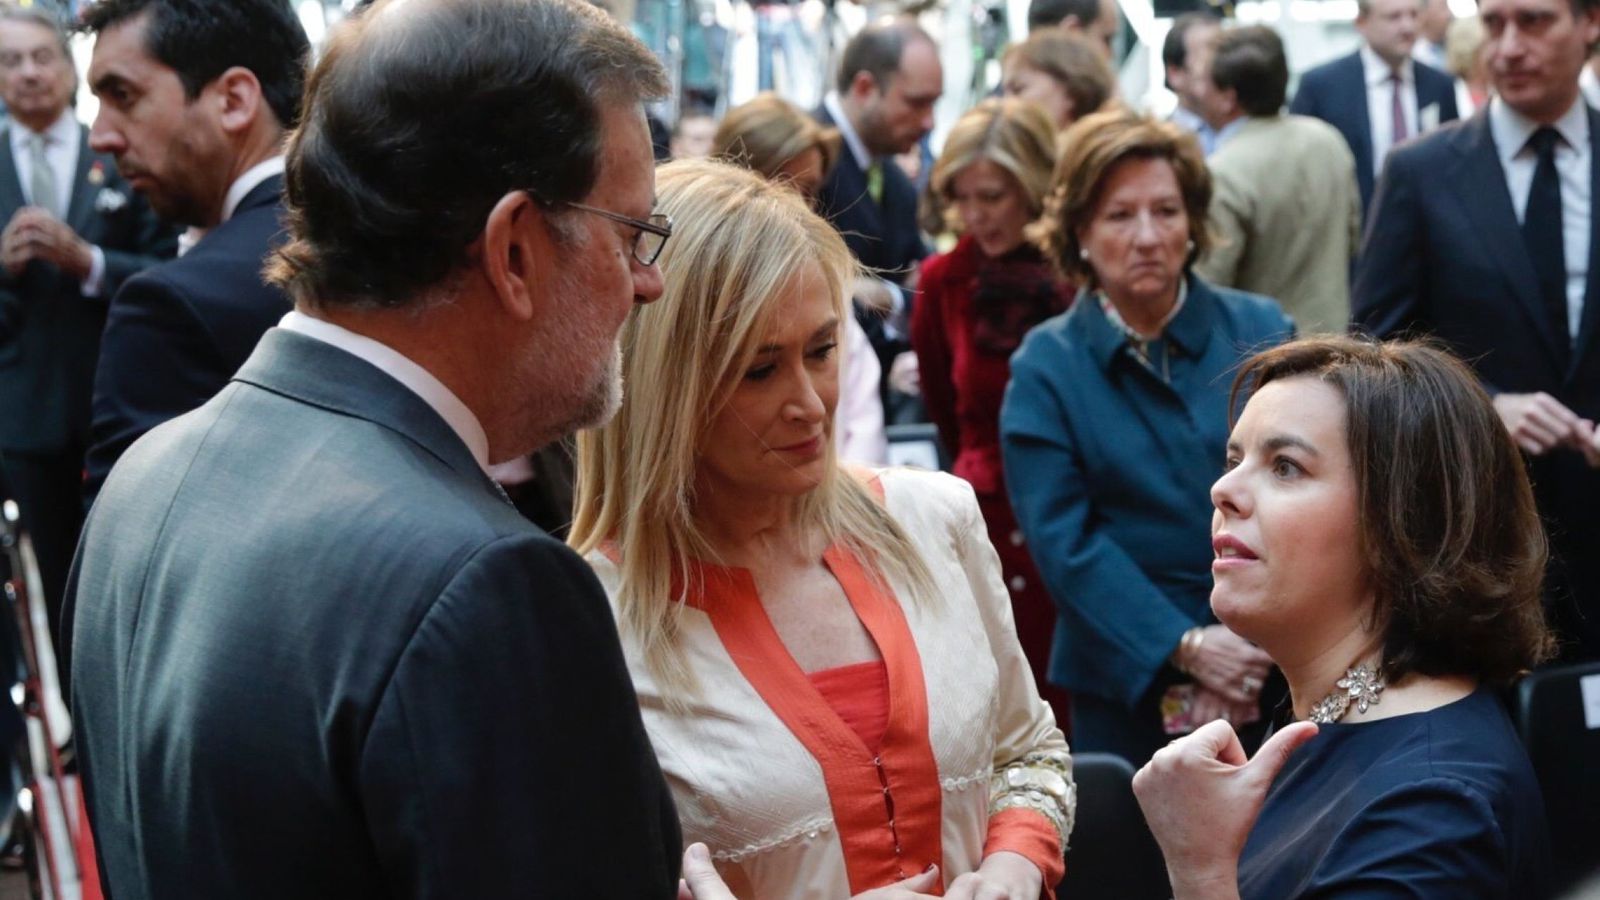 Foto: Rajoy, Cifuentes y Sáenz de Santamaría: los candidatos, conversando. (Efe/Zipi)